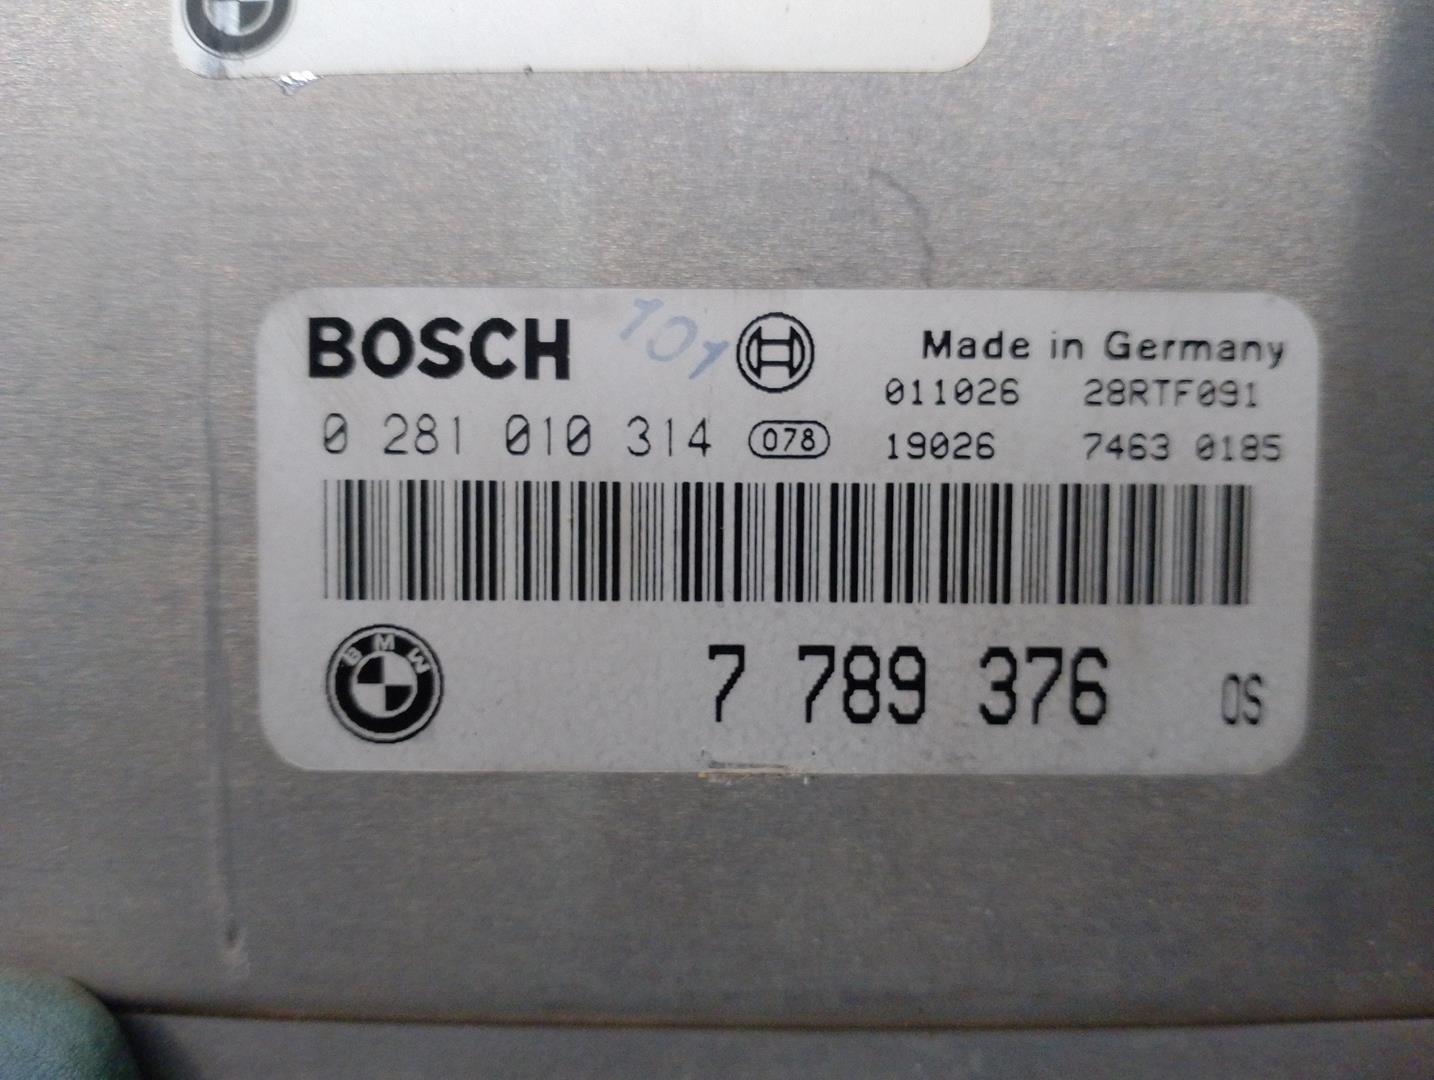 BMW 3 Series E46 (1997-2006) Engine Control Unit ECU 7789376, 0281010314 21728183